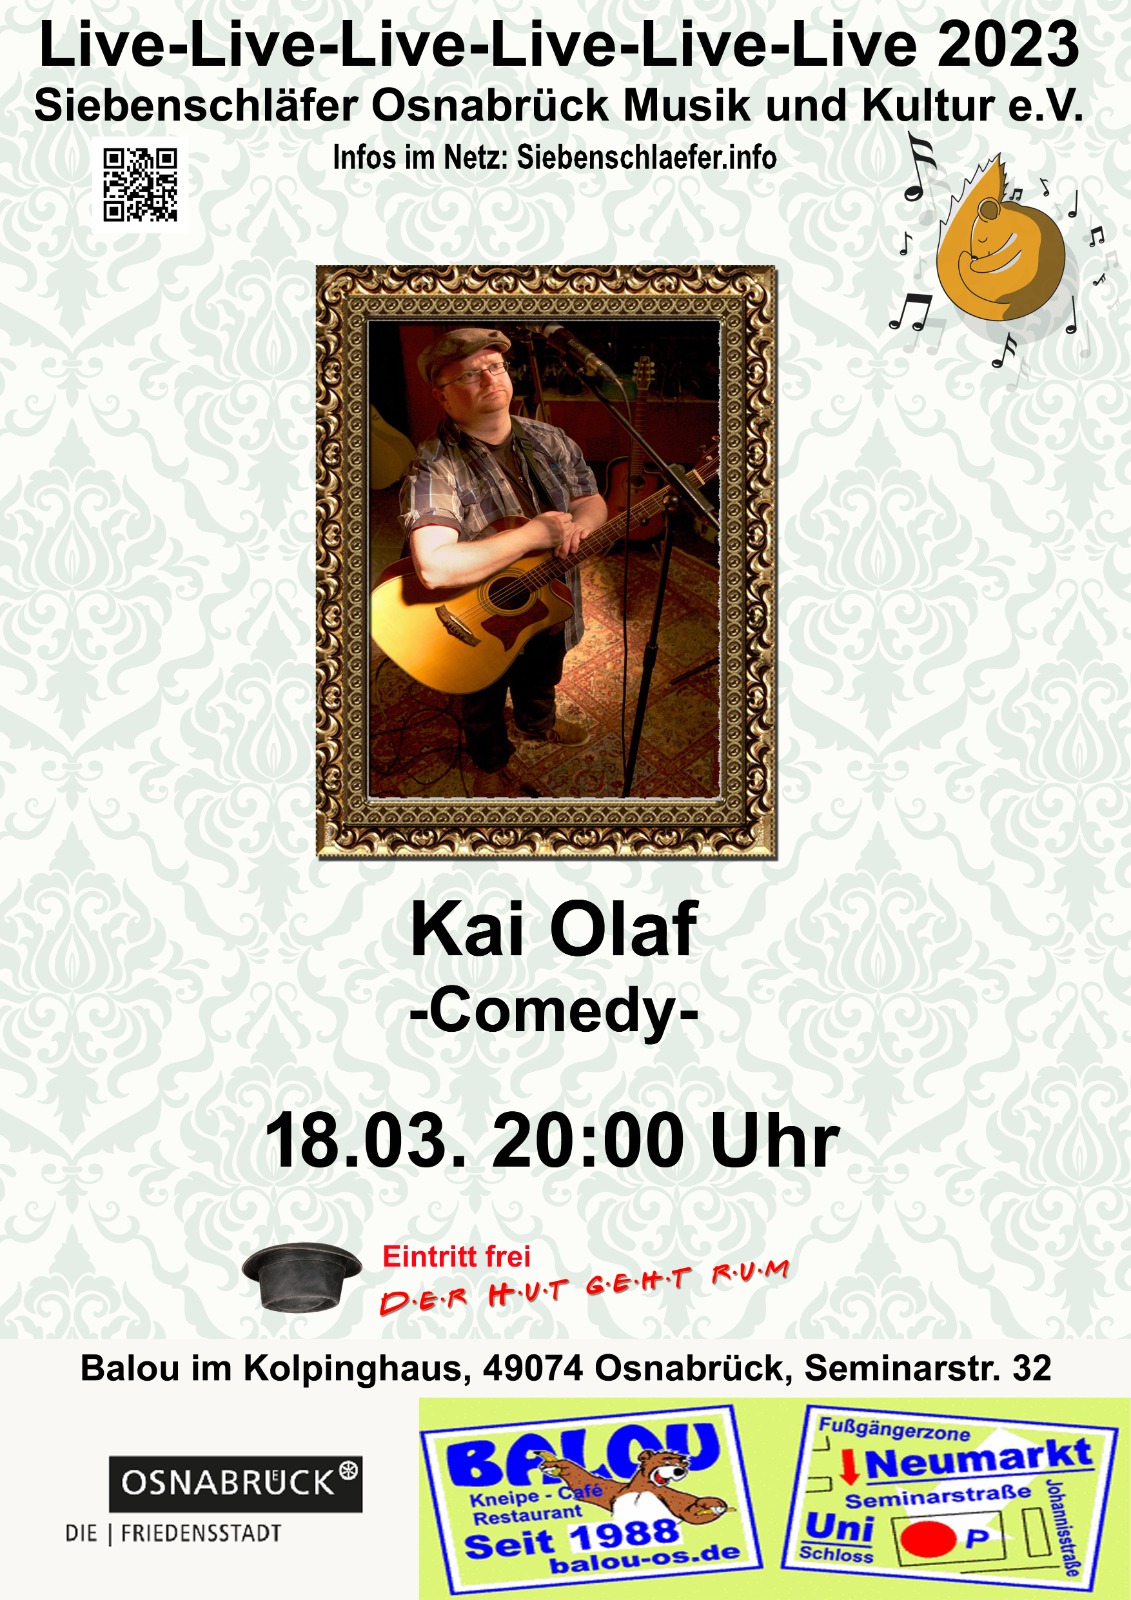 Veranstaltungsplakat Siebenschläfer Comedy mit Kai Olaf am 13.03.2023 um 20:00 Uhr im Balou
                                    im Kolpinghaus in der Seminarstraße 32 in Osnabrueck. Der Eintritt ist frei, der Hut geht rum.